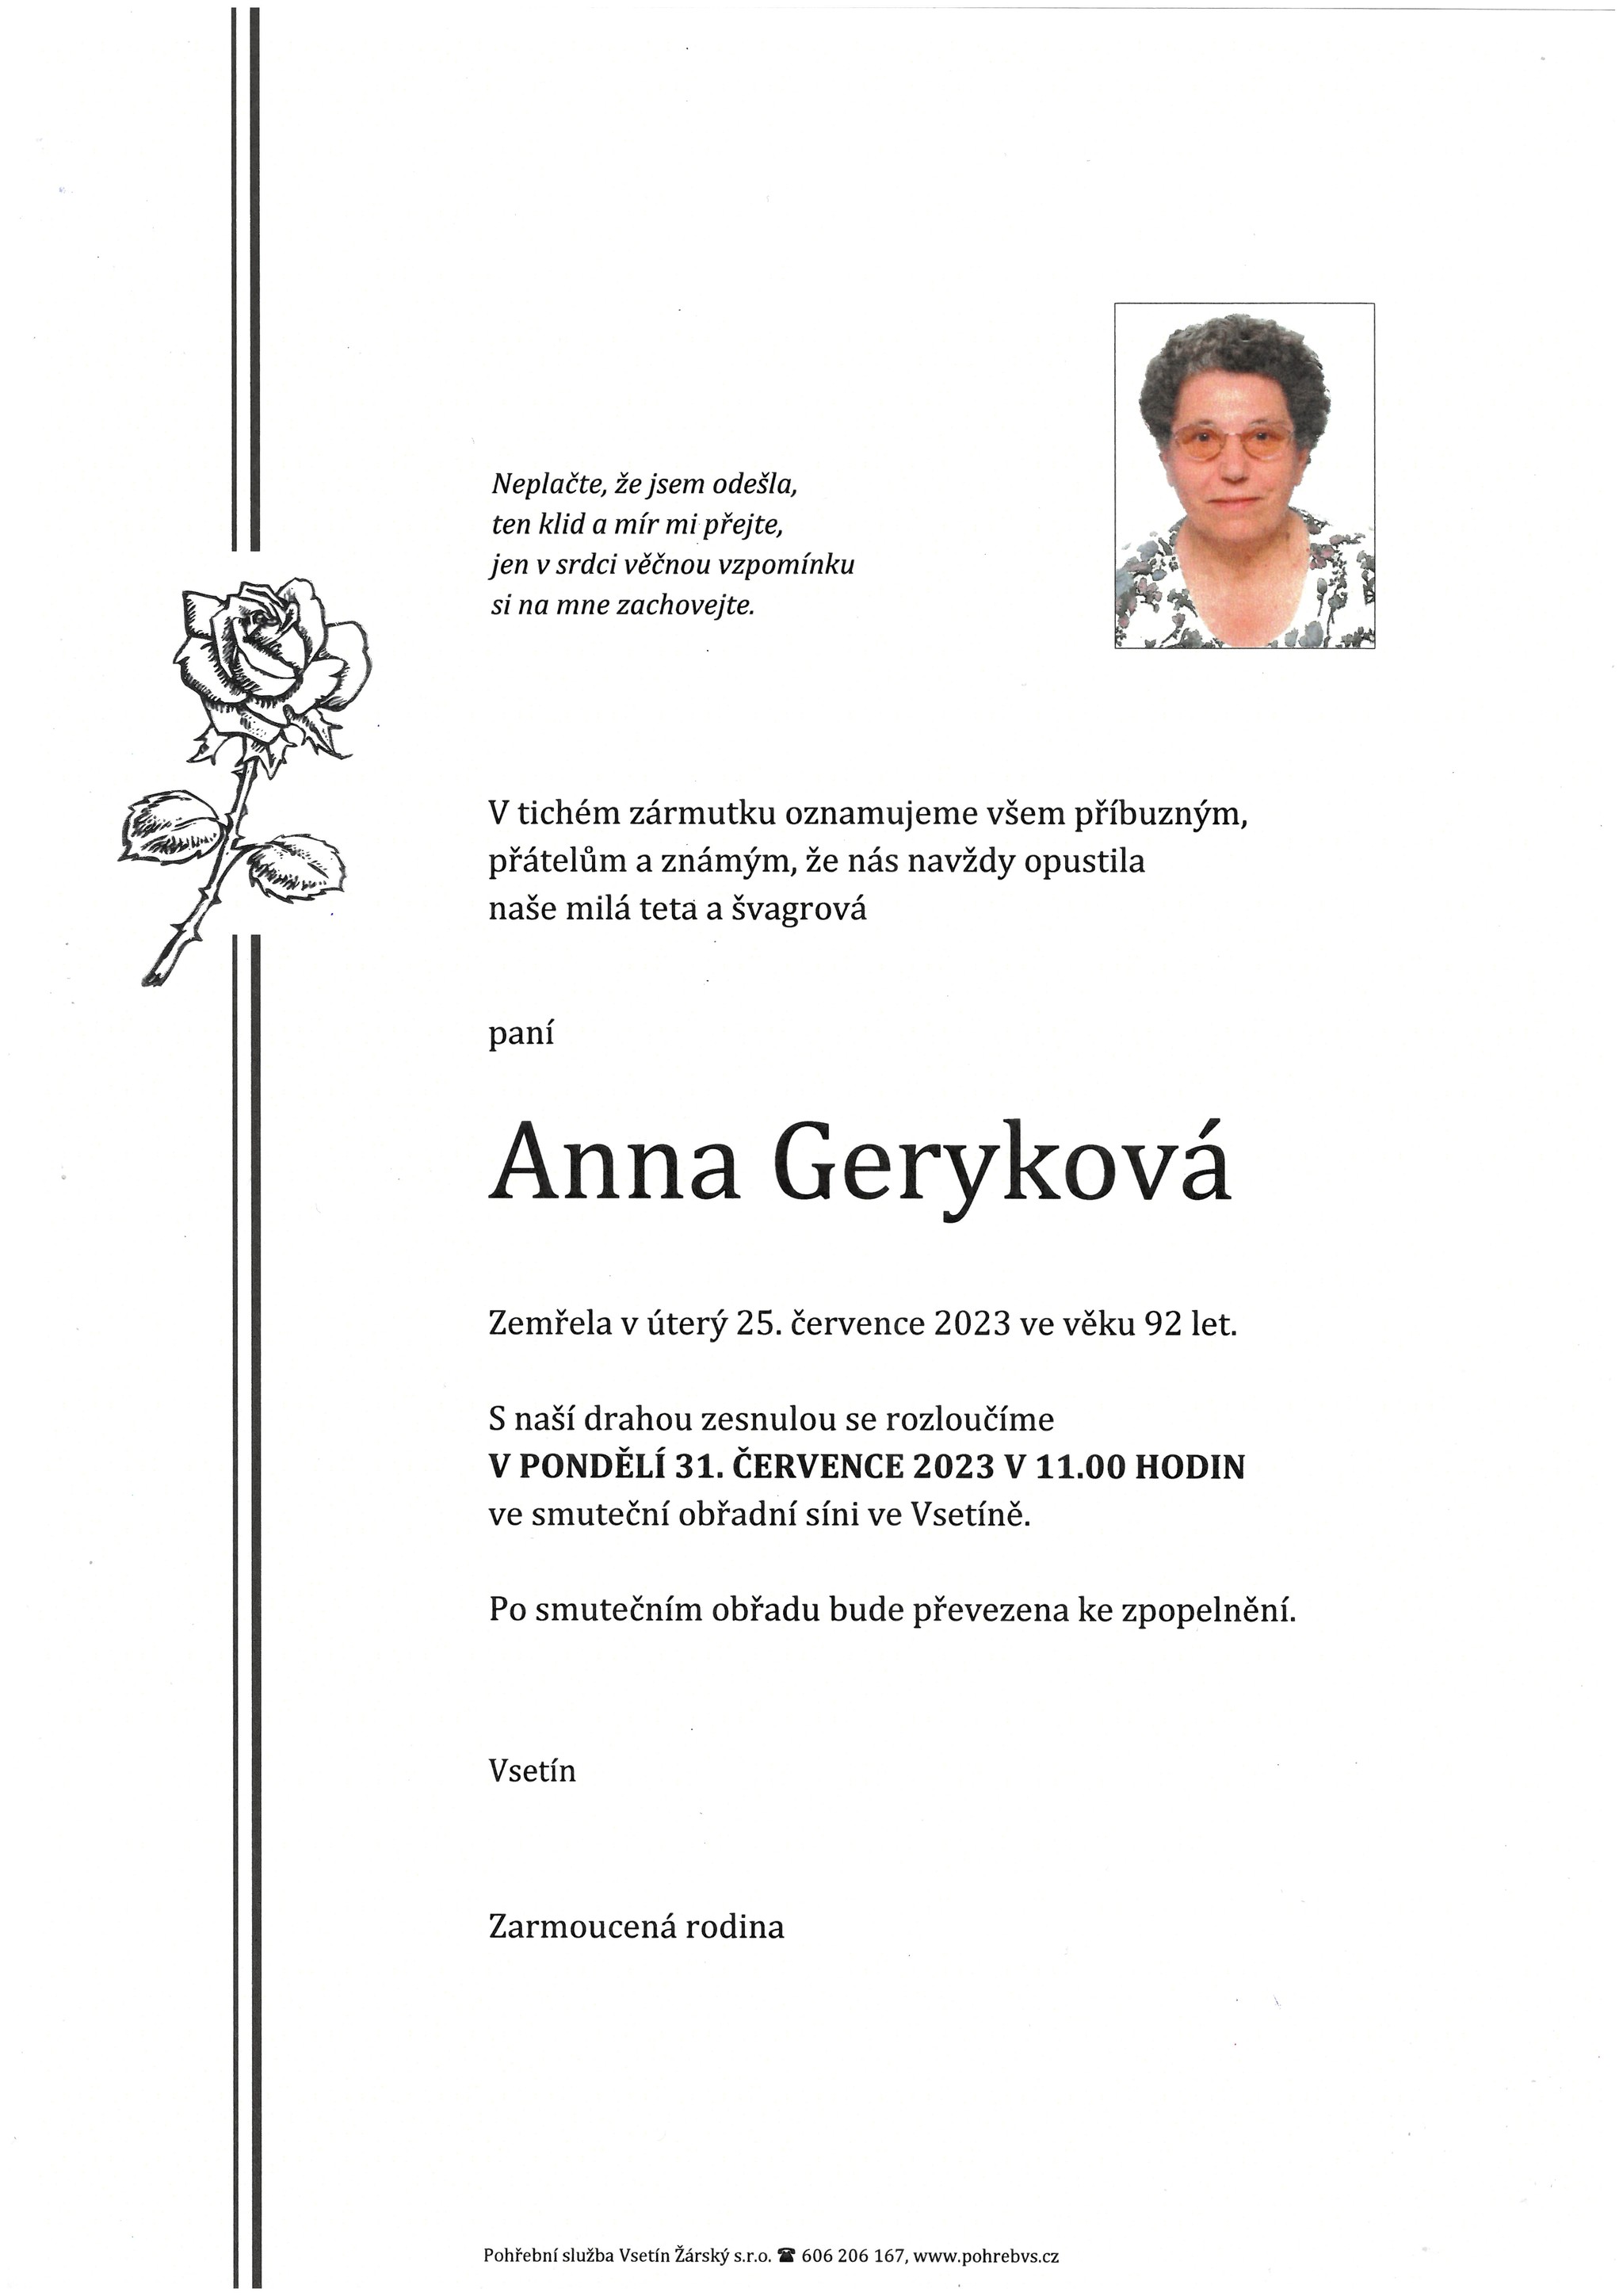 Anna Geryková